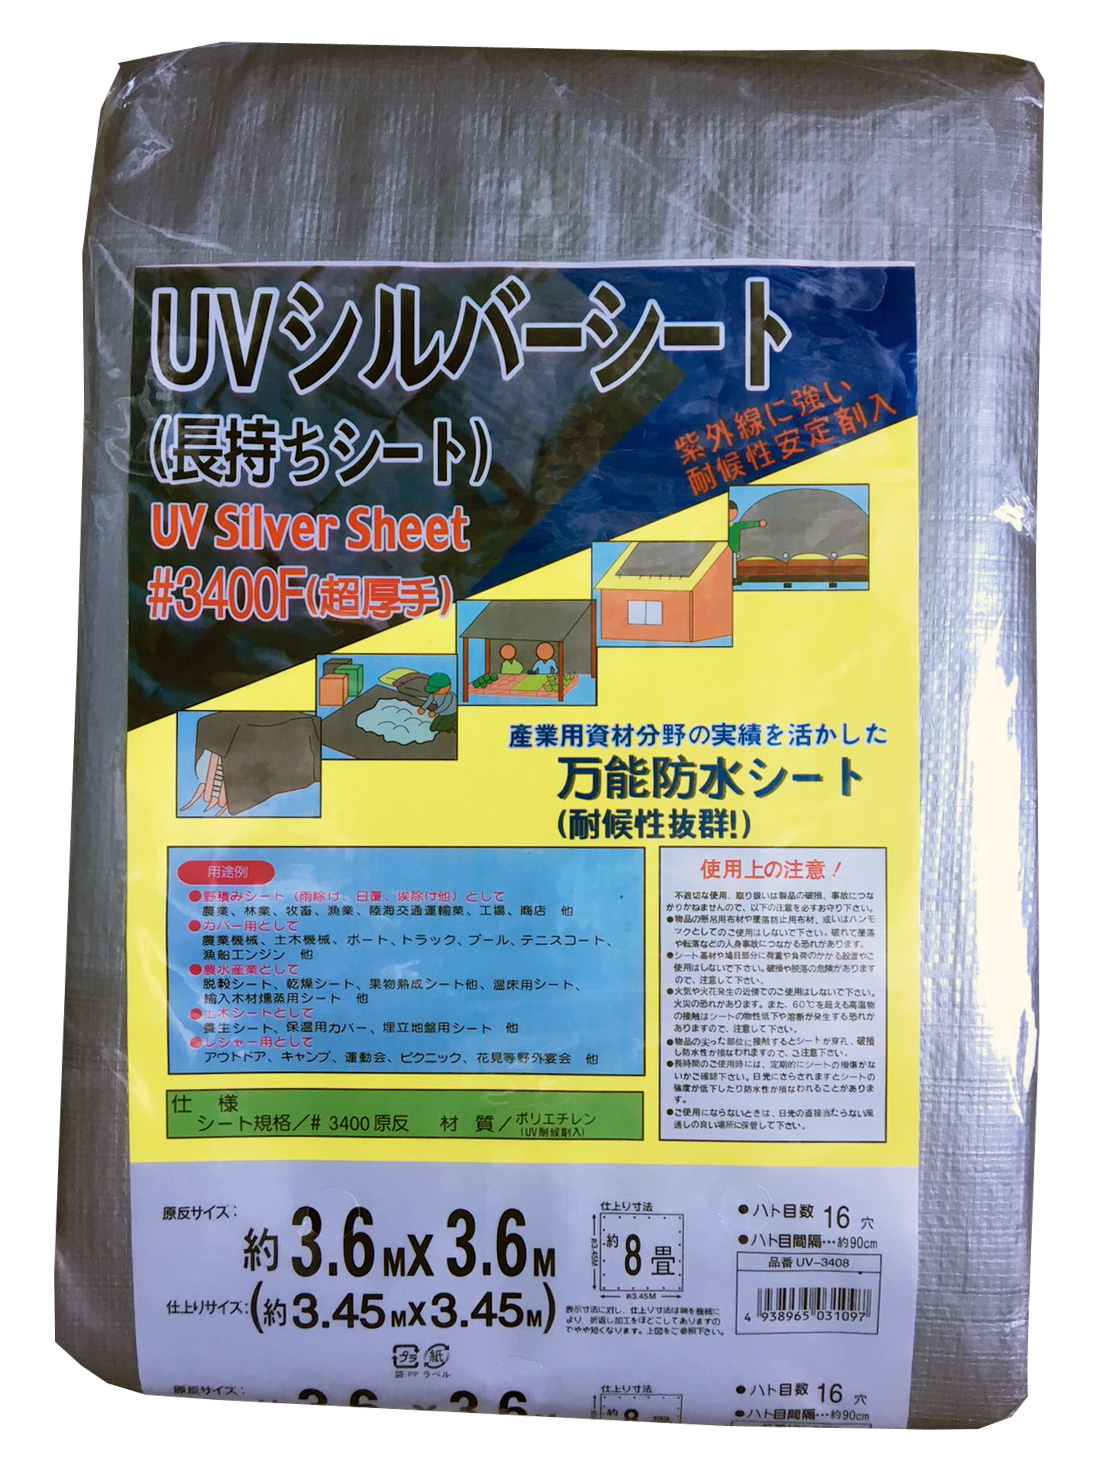 UVシルバーシート ＃3400 (5.4m×7.2m)  (5枚セット) - 3